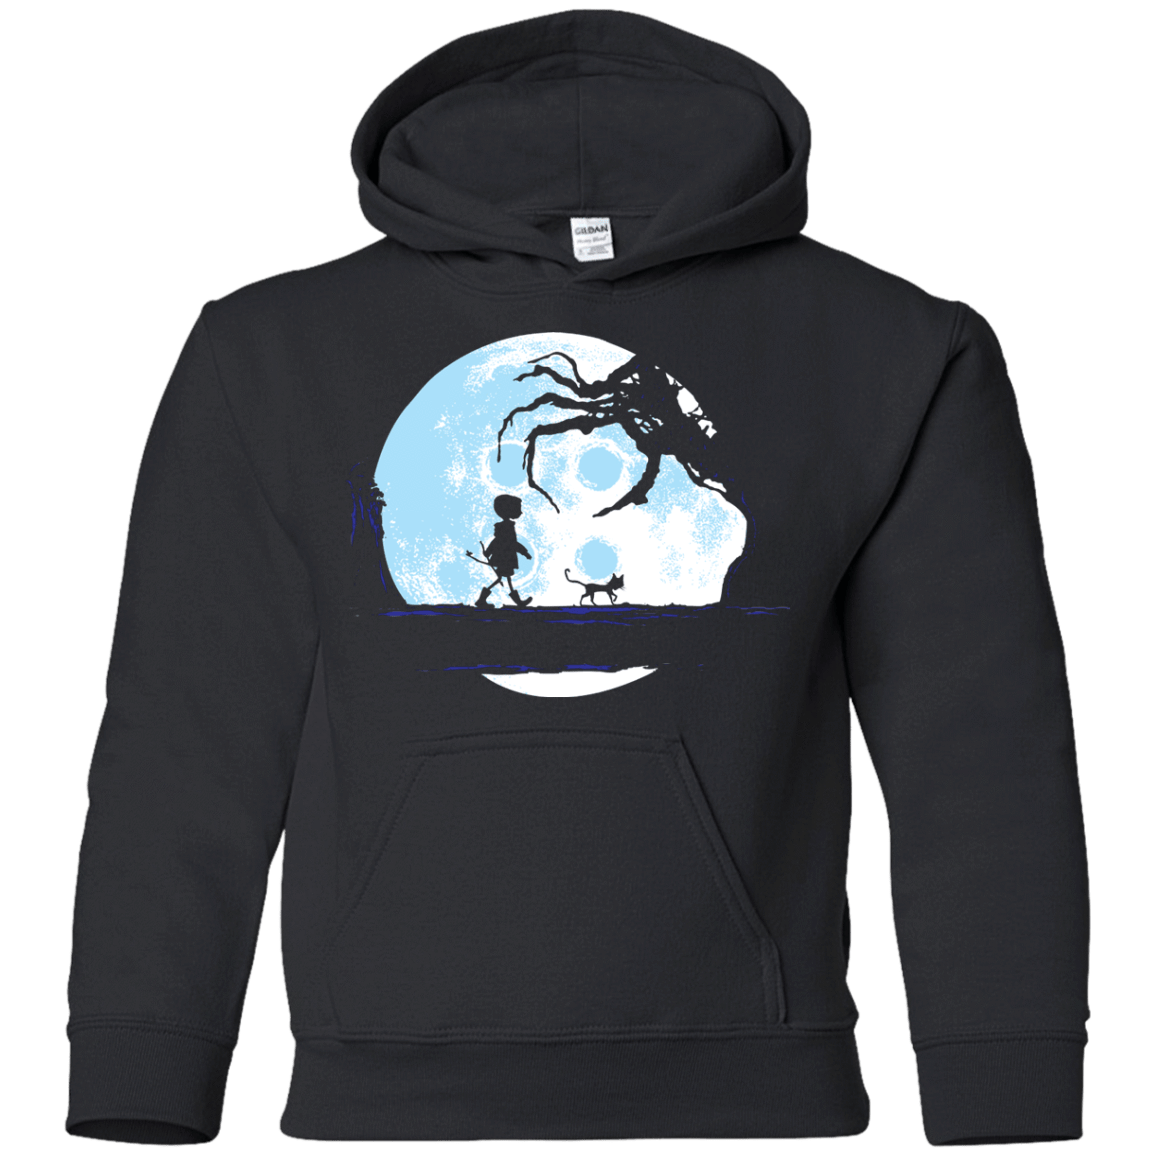 Sweatshirts Black / YS Perfect Moonwalk- Coraline Youth Hoodie